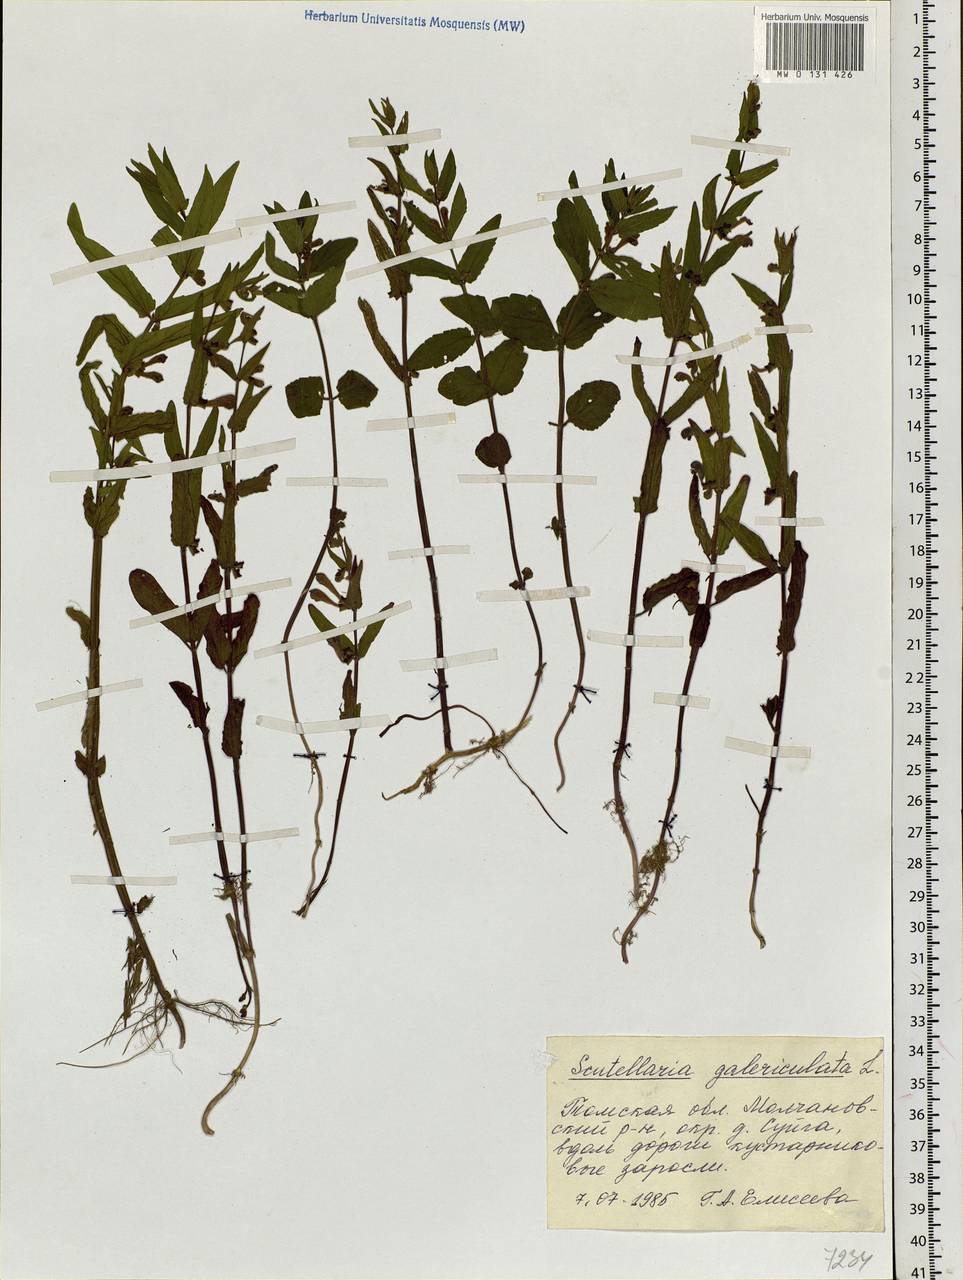 Scutellaria galericulata L., Siberia, Western Siberia (S1) (Russia)